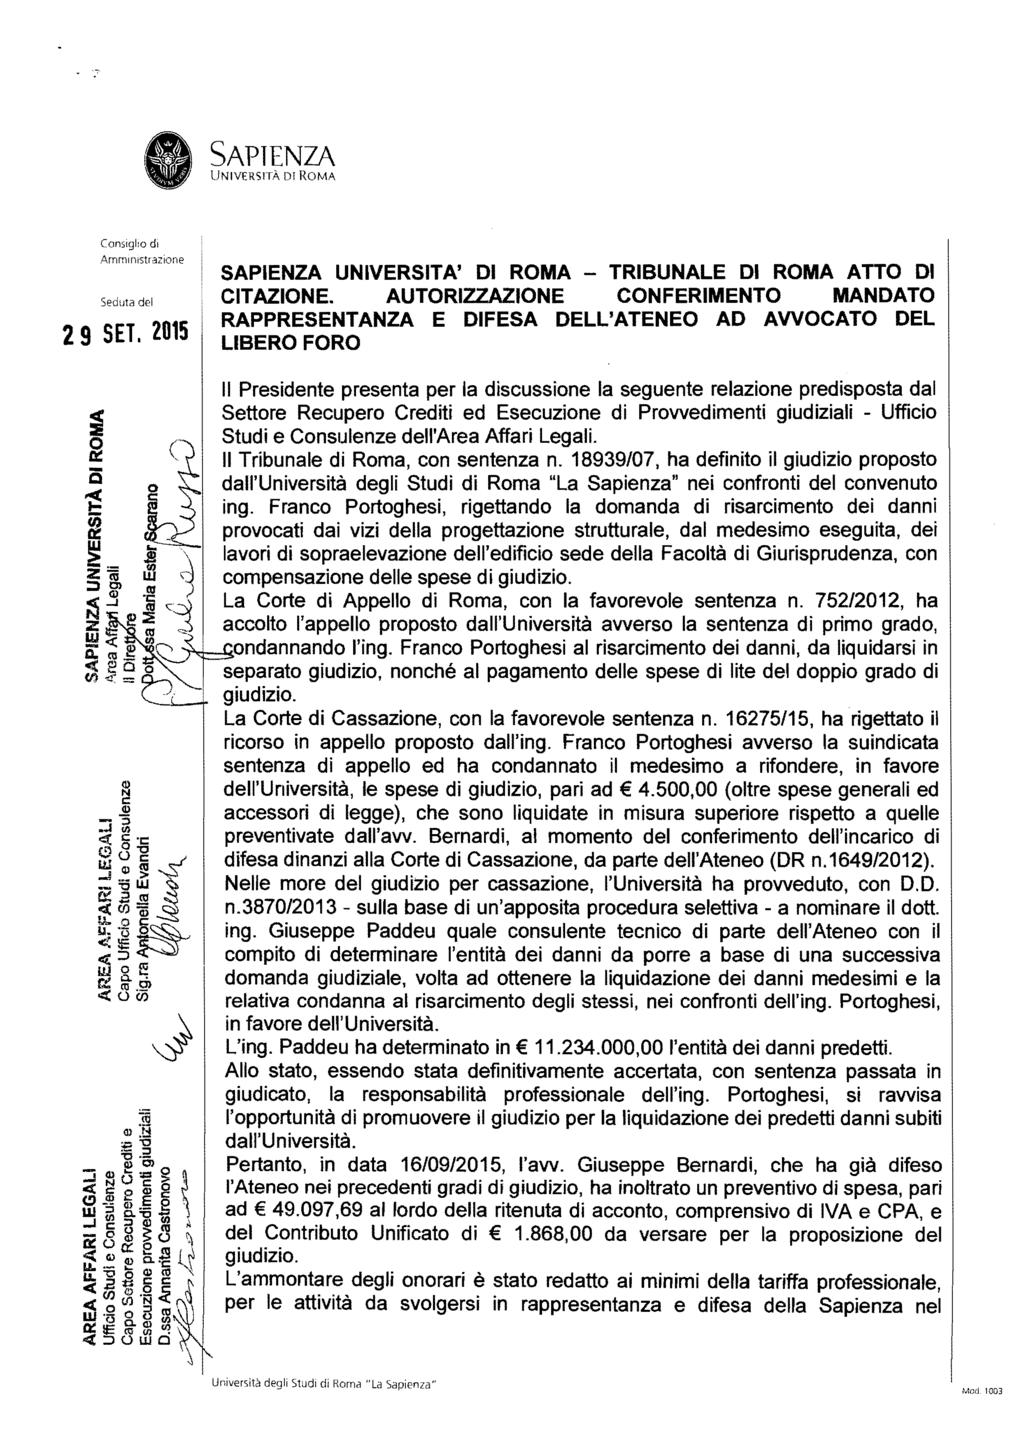 SAPIENZA AmmInistrazione 29 SET. 2015 SAPIENZA UNIVERSITA' DI ROMA - TRIBUNALE DI ROMA ATTO DI CITAZIONE.